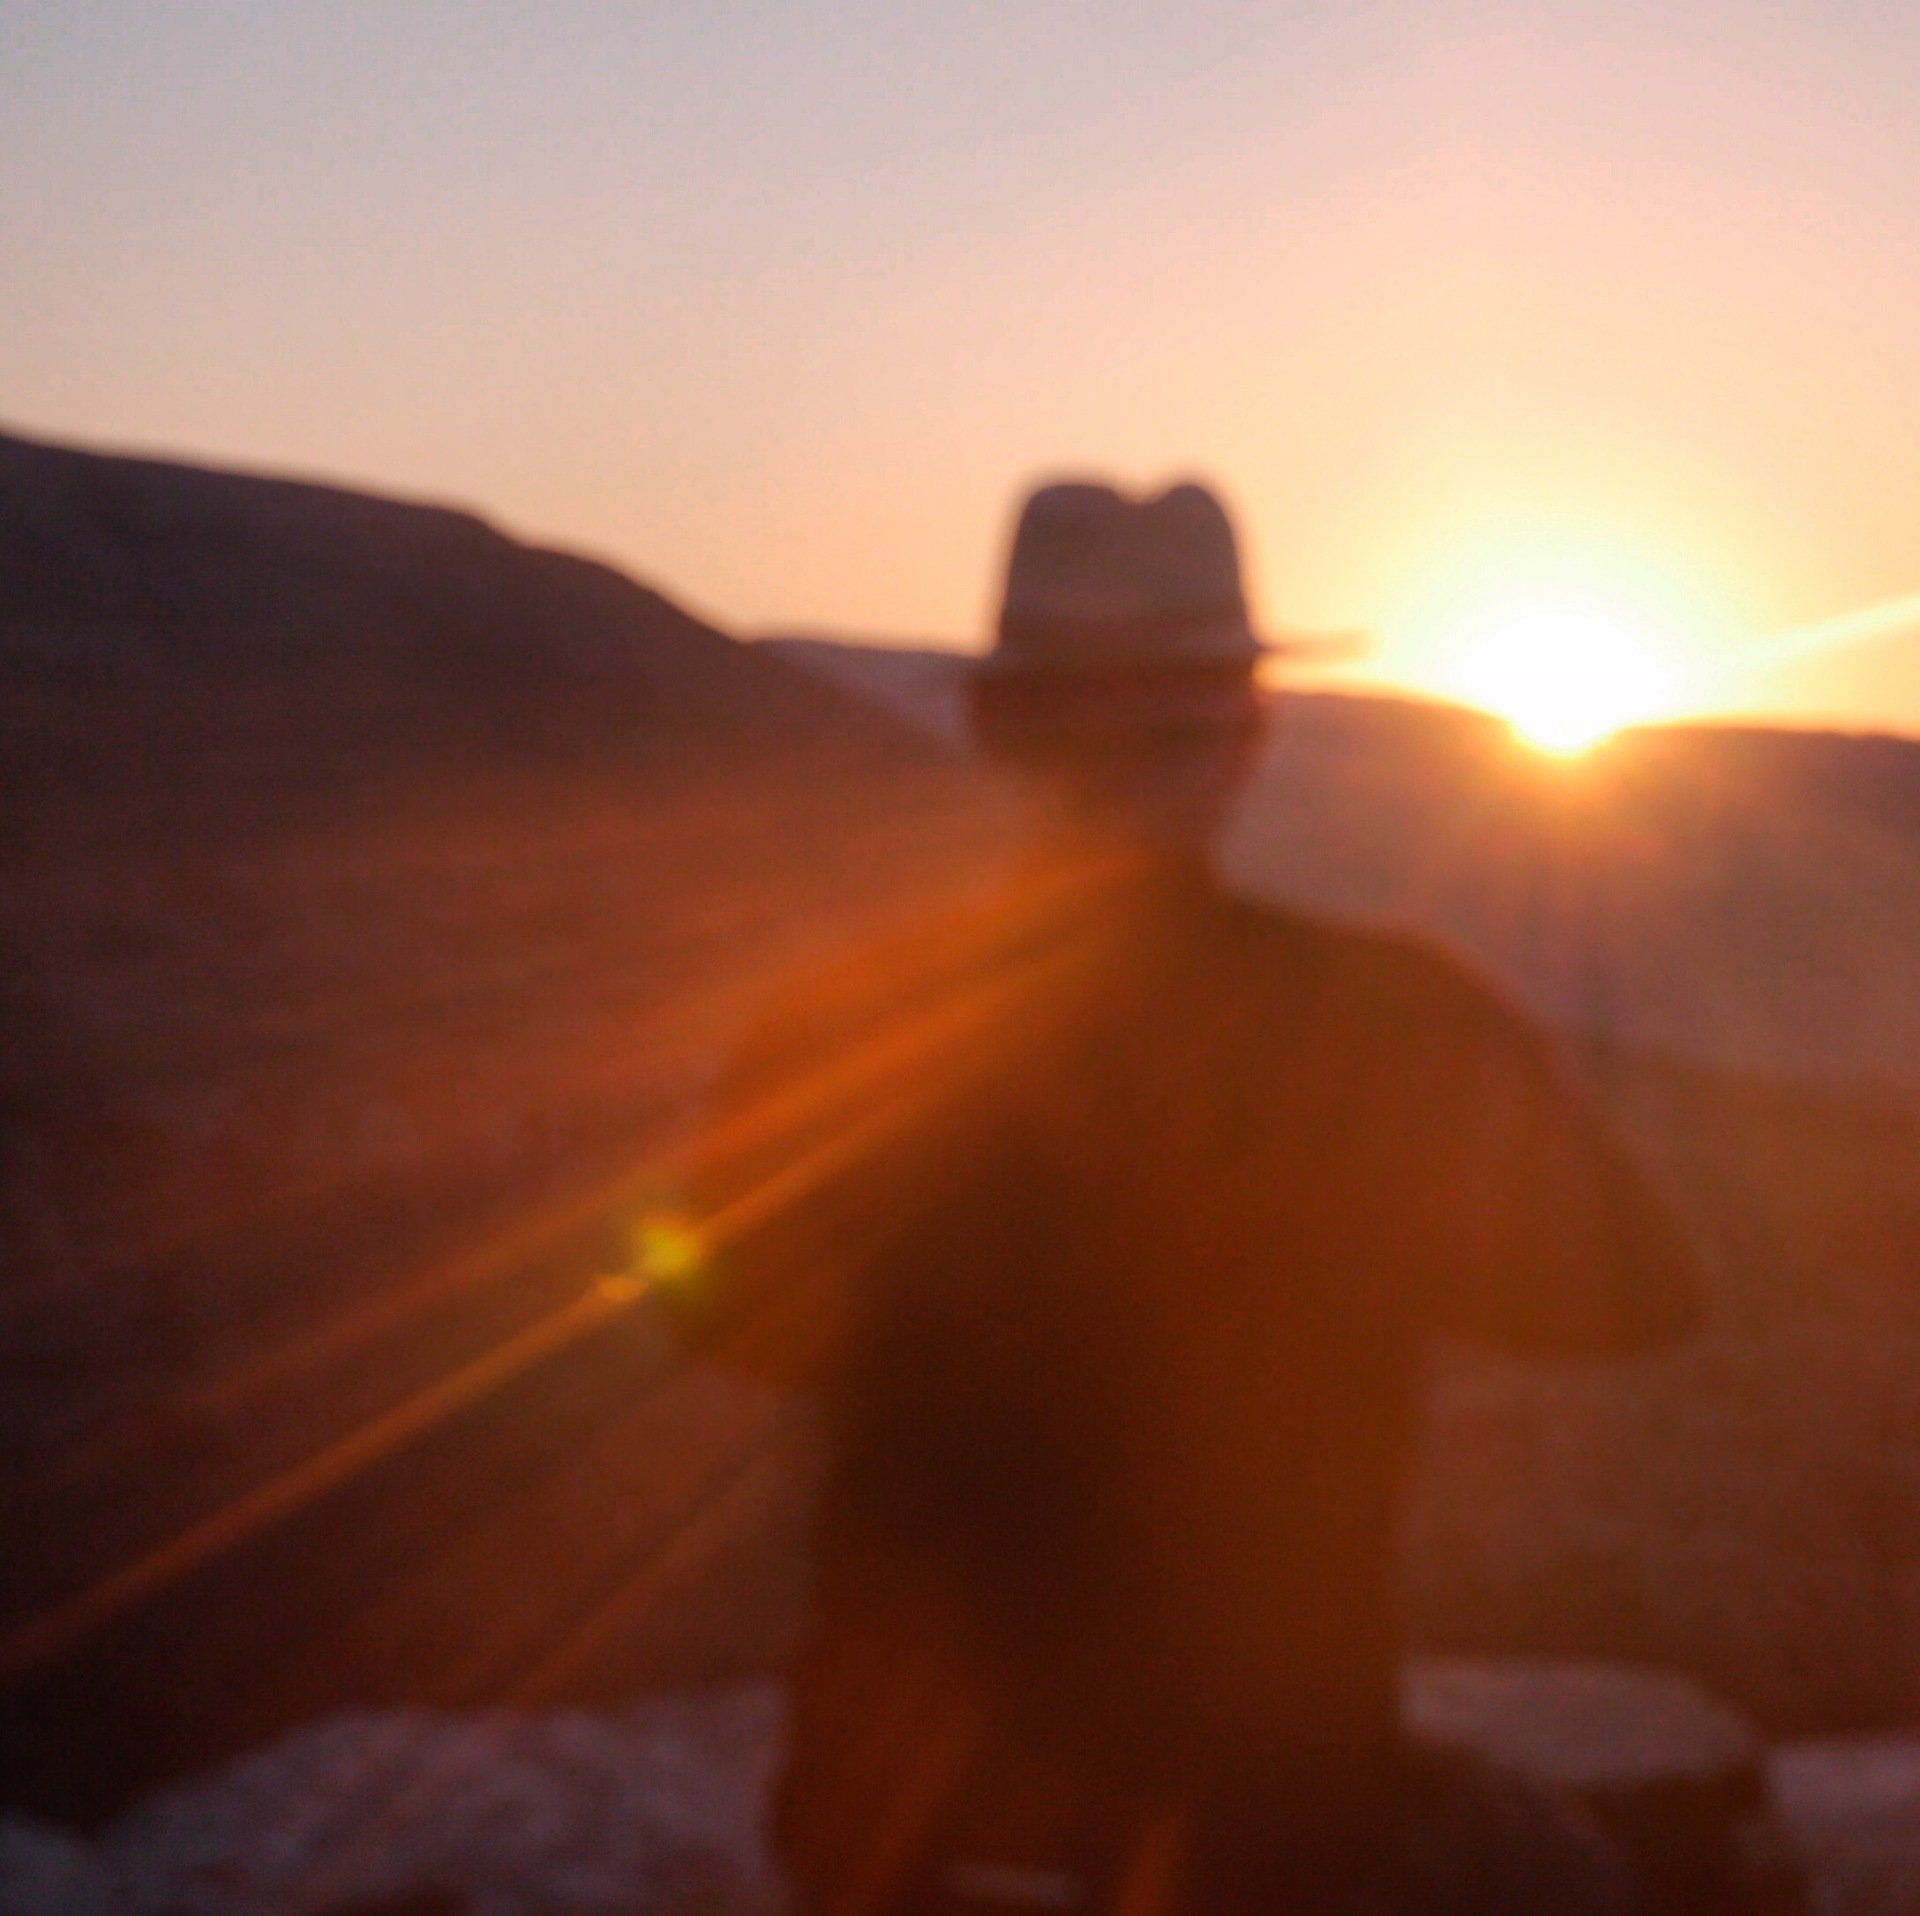 Cees Franke hier met goed mediteert tijdens de zonsondergang in Droutsoulas, een bergdorp op het Griekse eiland Ikaria.